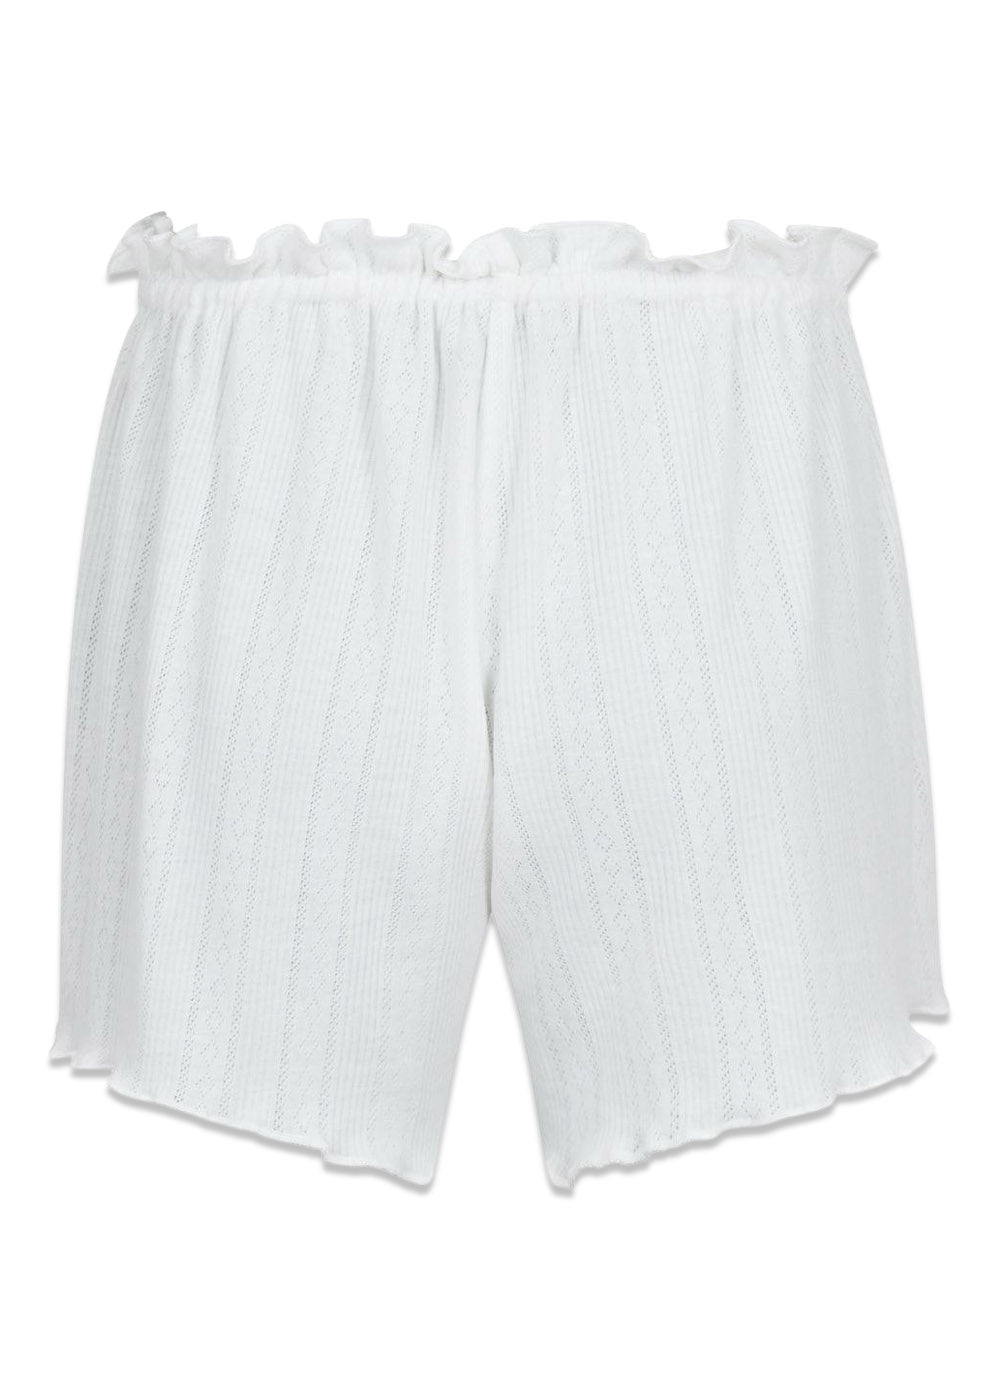 Merritt Pointelle Shorts - White